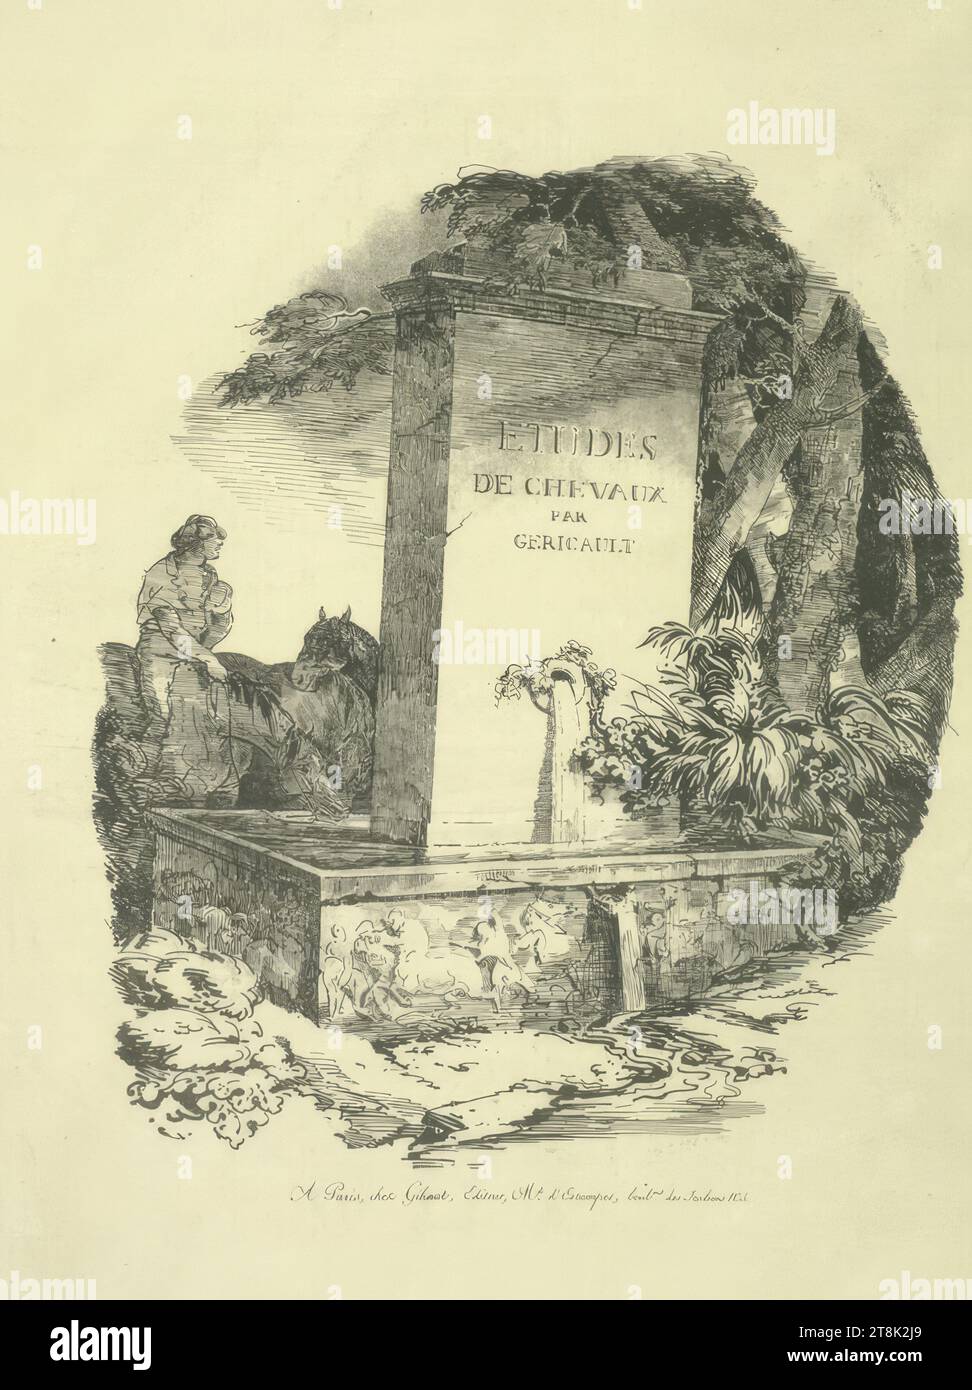 L'Abreuvoir; titre des Grands Chevaux, Théodore Géricault, Rouen 1791 - 1824 Paris, 1822, print, lithograph; brown paper, passepartout cutout: 36.8 x 30.7 cm Stock Photo